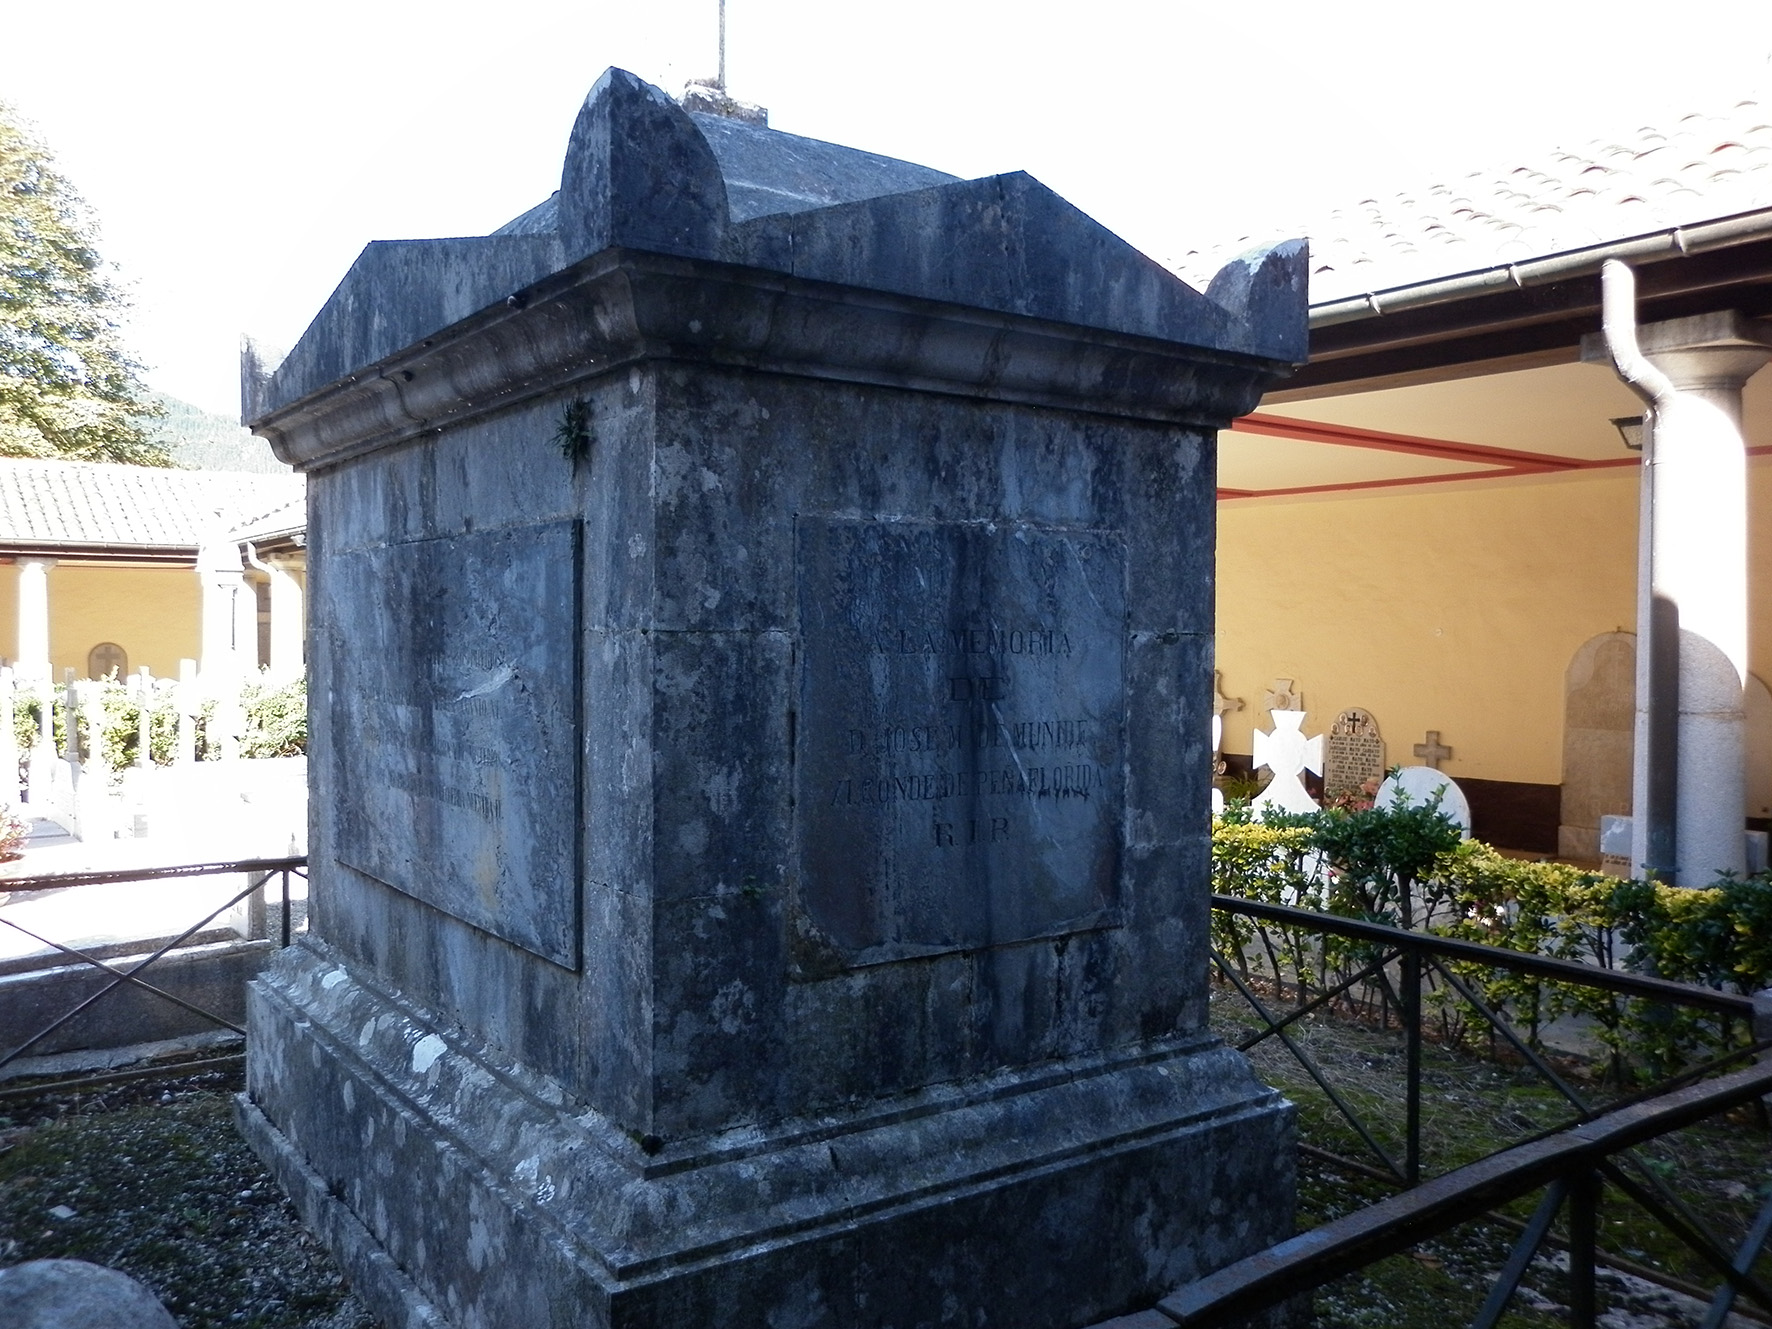 Xemeingo kanposantua barrutik. Jose Maria de Munibe Peñafloridako XI. kondearen mausoleoa ikus daiteke burdinazko hezi batek inguratuta.